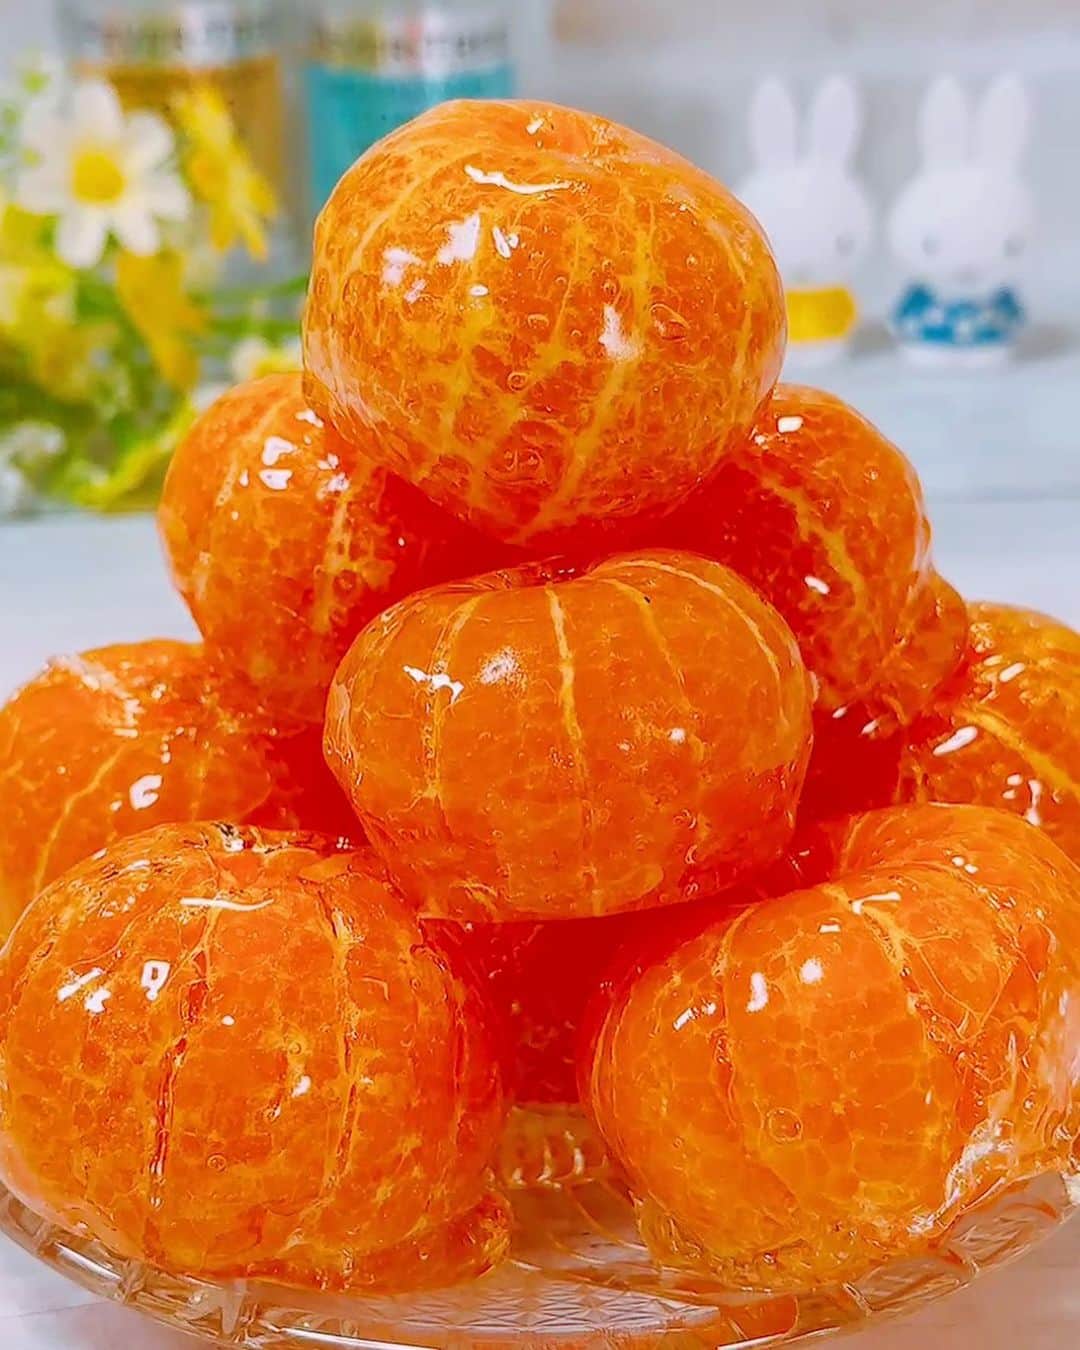 ひろまるのインスタグラム：「見てもつやつや！食べてもパリパリ！おうちで作るみかんあめ Crispy and delicious mandarin orange candy  今回はみかんあめを作ってみました。 みかんを綺麗にむくコツとアメを綺麗にコーティングするコツを動画で説明しています。 ピカピカでカッチカチのパリッパリで美味しいよ〜♪  I made mandarin orange candy today. The video explains how to peel oranges beautifully and how to coat candy beautifully. Please try making it.  【ingredients】5 pieces 5　Mandarin orange 200g　Granulated sugar 50ml　Water Hot water enough to soak Five oranges Enough amount of ice water to soak Five oranges  【材料】5個分 みかん(SS)　5個 グラニュー糖  200g　(砂糖でも大丈夫です) 水　　50ml 熱湯　みかん5個が浸かるくらい 氷水  みかん5個が浸かるくらい  【作り方】 (みかんを綺麗にむく方法) ①熱湯にみかんを約4分浸けて、その後すぐに氷水に約1分浸けて皮をむきます。  (アメを作ります) ②鍋にグラニュー糖を入れて水を加えて中火で煮詰めて、薄いきつね色になったら火を止める。  ③お箸をみかんの真ん中に刺してアメを全体につけて余分なアメを切る。  ④アメを付けたみかんをクッキングシートに置いていく。 今回はシルパットを使いました。 ※アメはとても熱くなってますのでヤケドに気をつけてください。  ⑤アメがうまく煮詰まっていたらすぐに固まる。 ※ベタベタしていつまでも固まらないときは煮詰め方がたりないので、薄いキツネ色になるまで煮詰めてくださいね。(べっこうあめの色です)  アメが残ったらクッキングシートに流してアメとして食べてください。  #りんごあめ #琥珀糖 #みかん #みかんあめ #あめ #귤 아메　#mandarin orange candy #あめニダ #あめ #お祭り #べっこうあめ #hiromarucooktv」